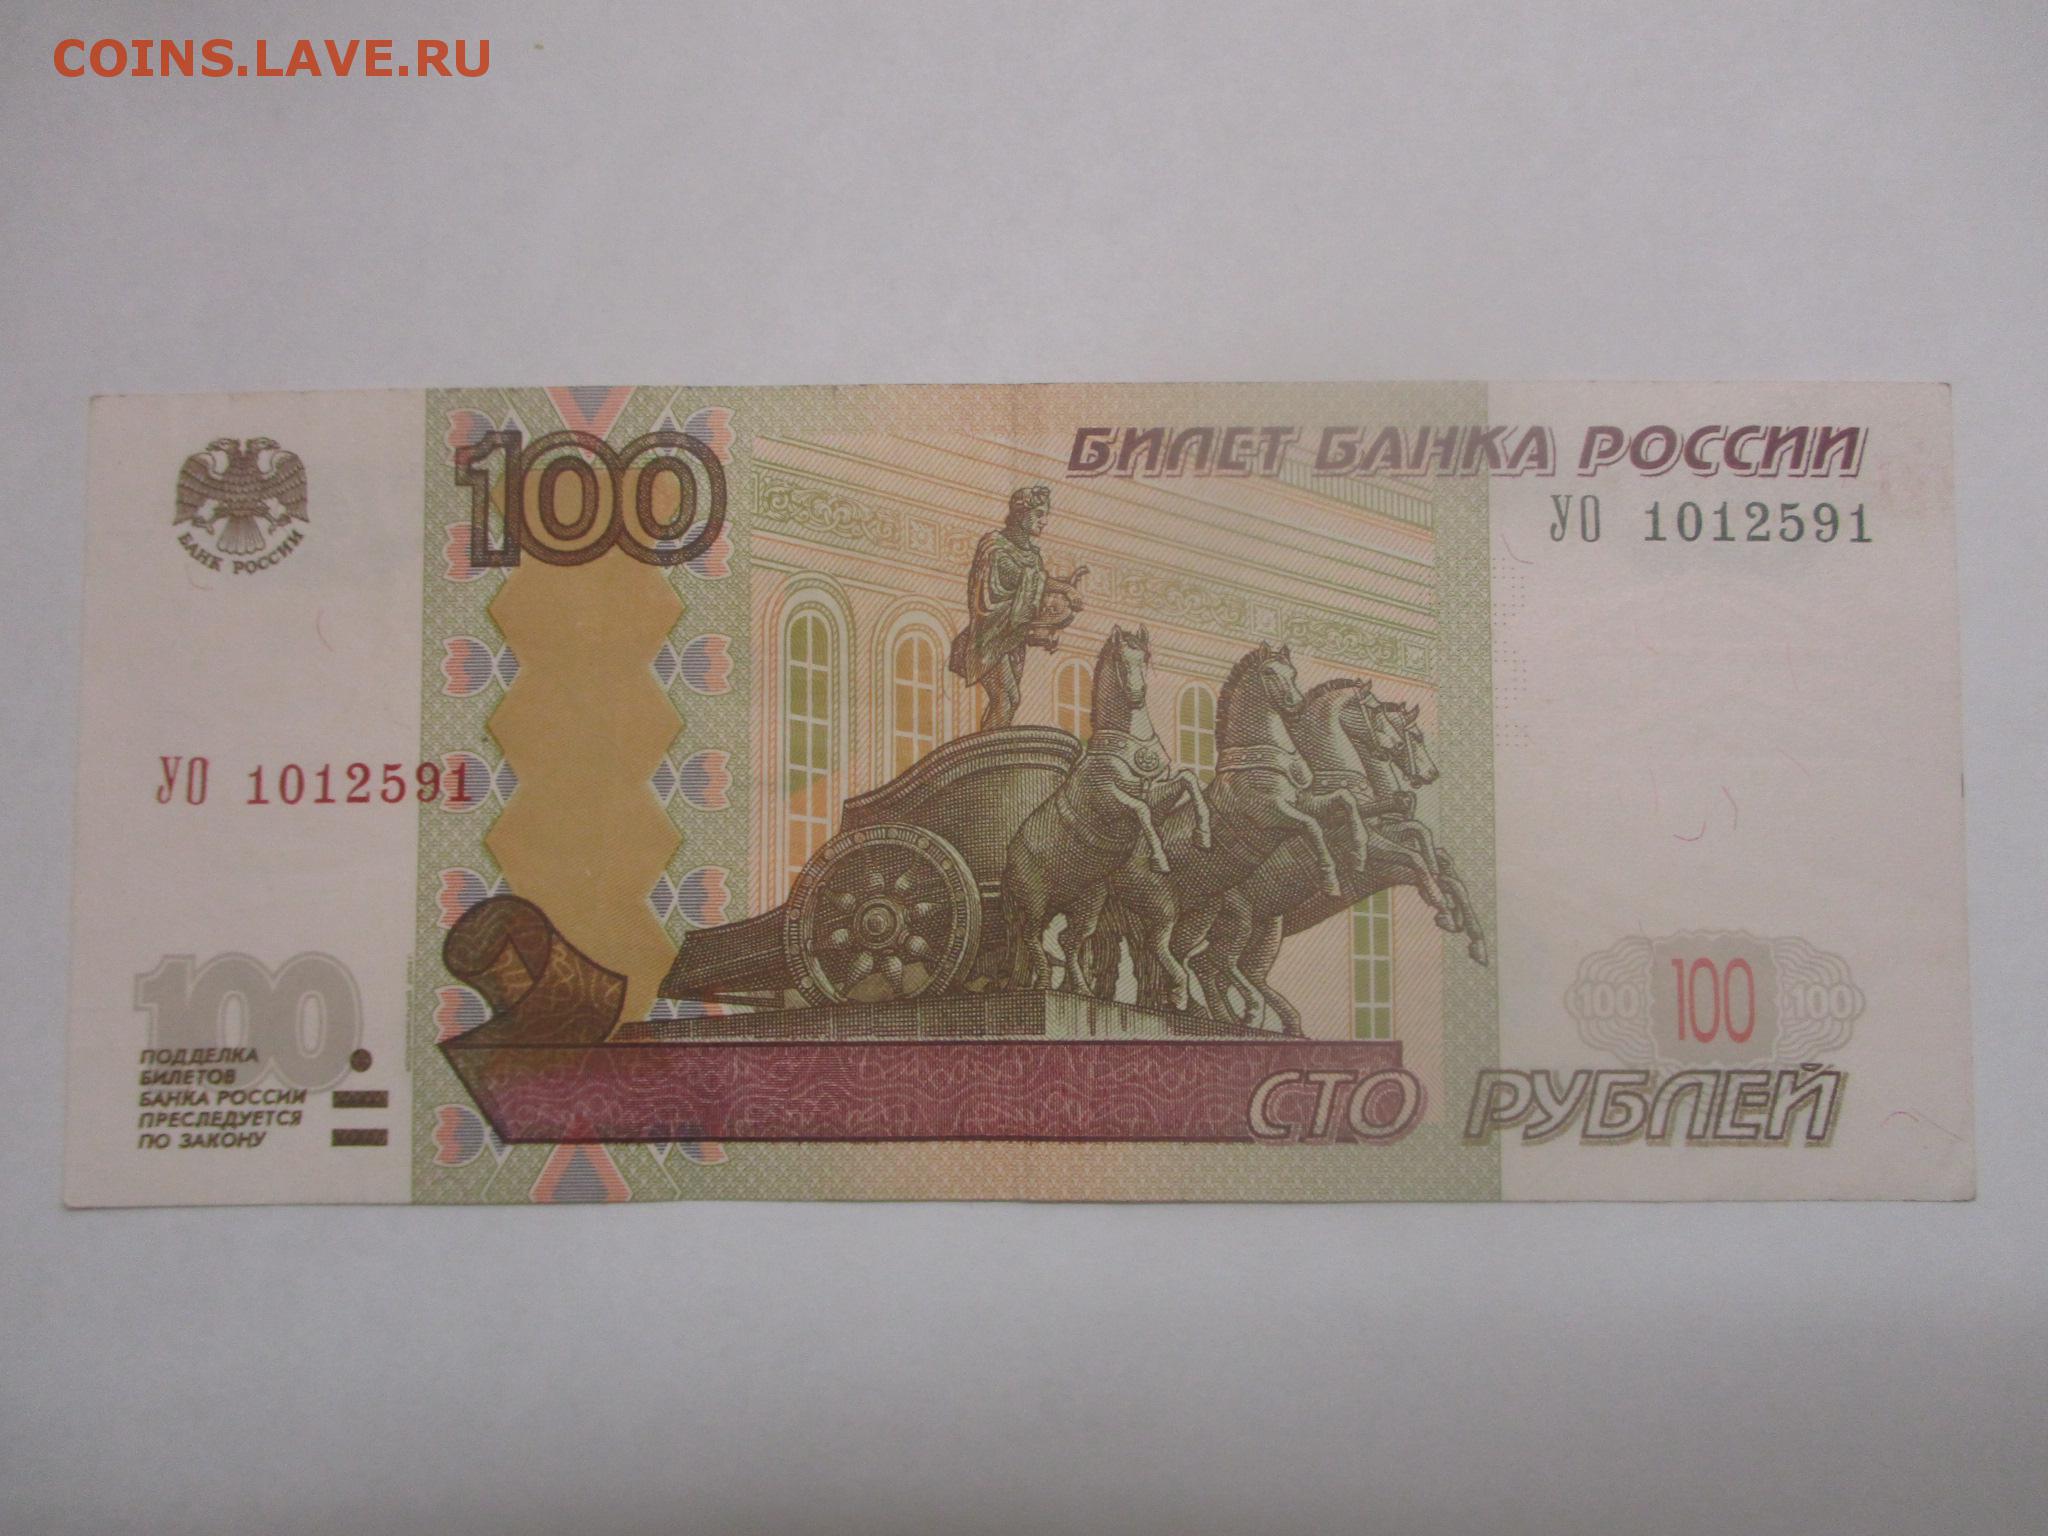 35 см в рублях. 100 Рублей 1997 модификация 2004. СТО рублей. 100 Рублей. СТО рублей купюра.